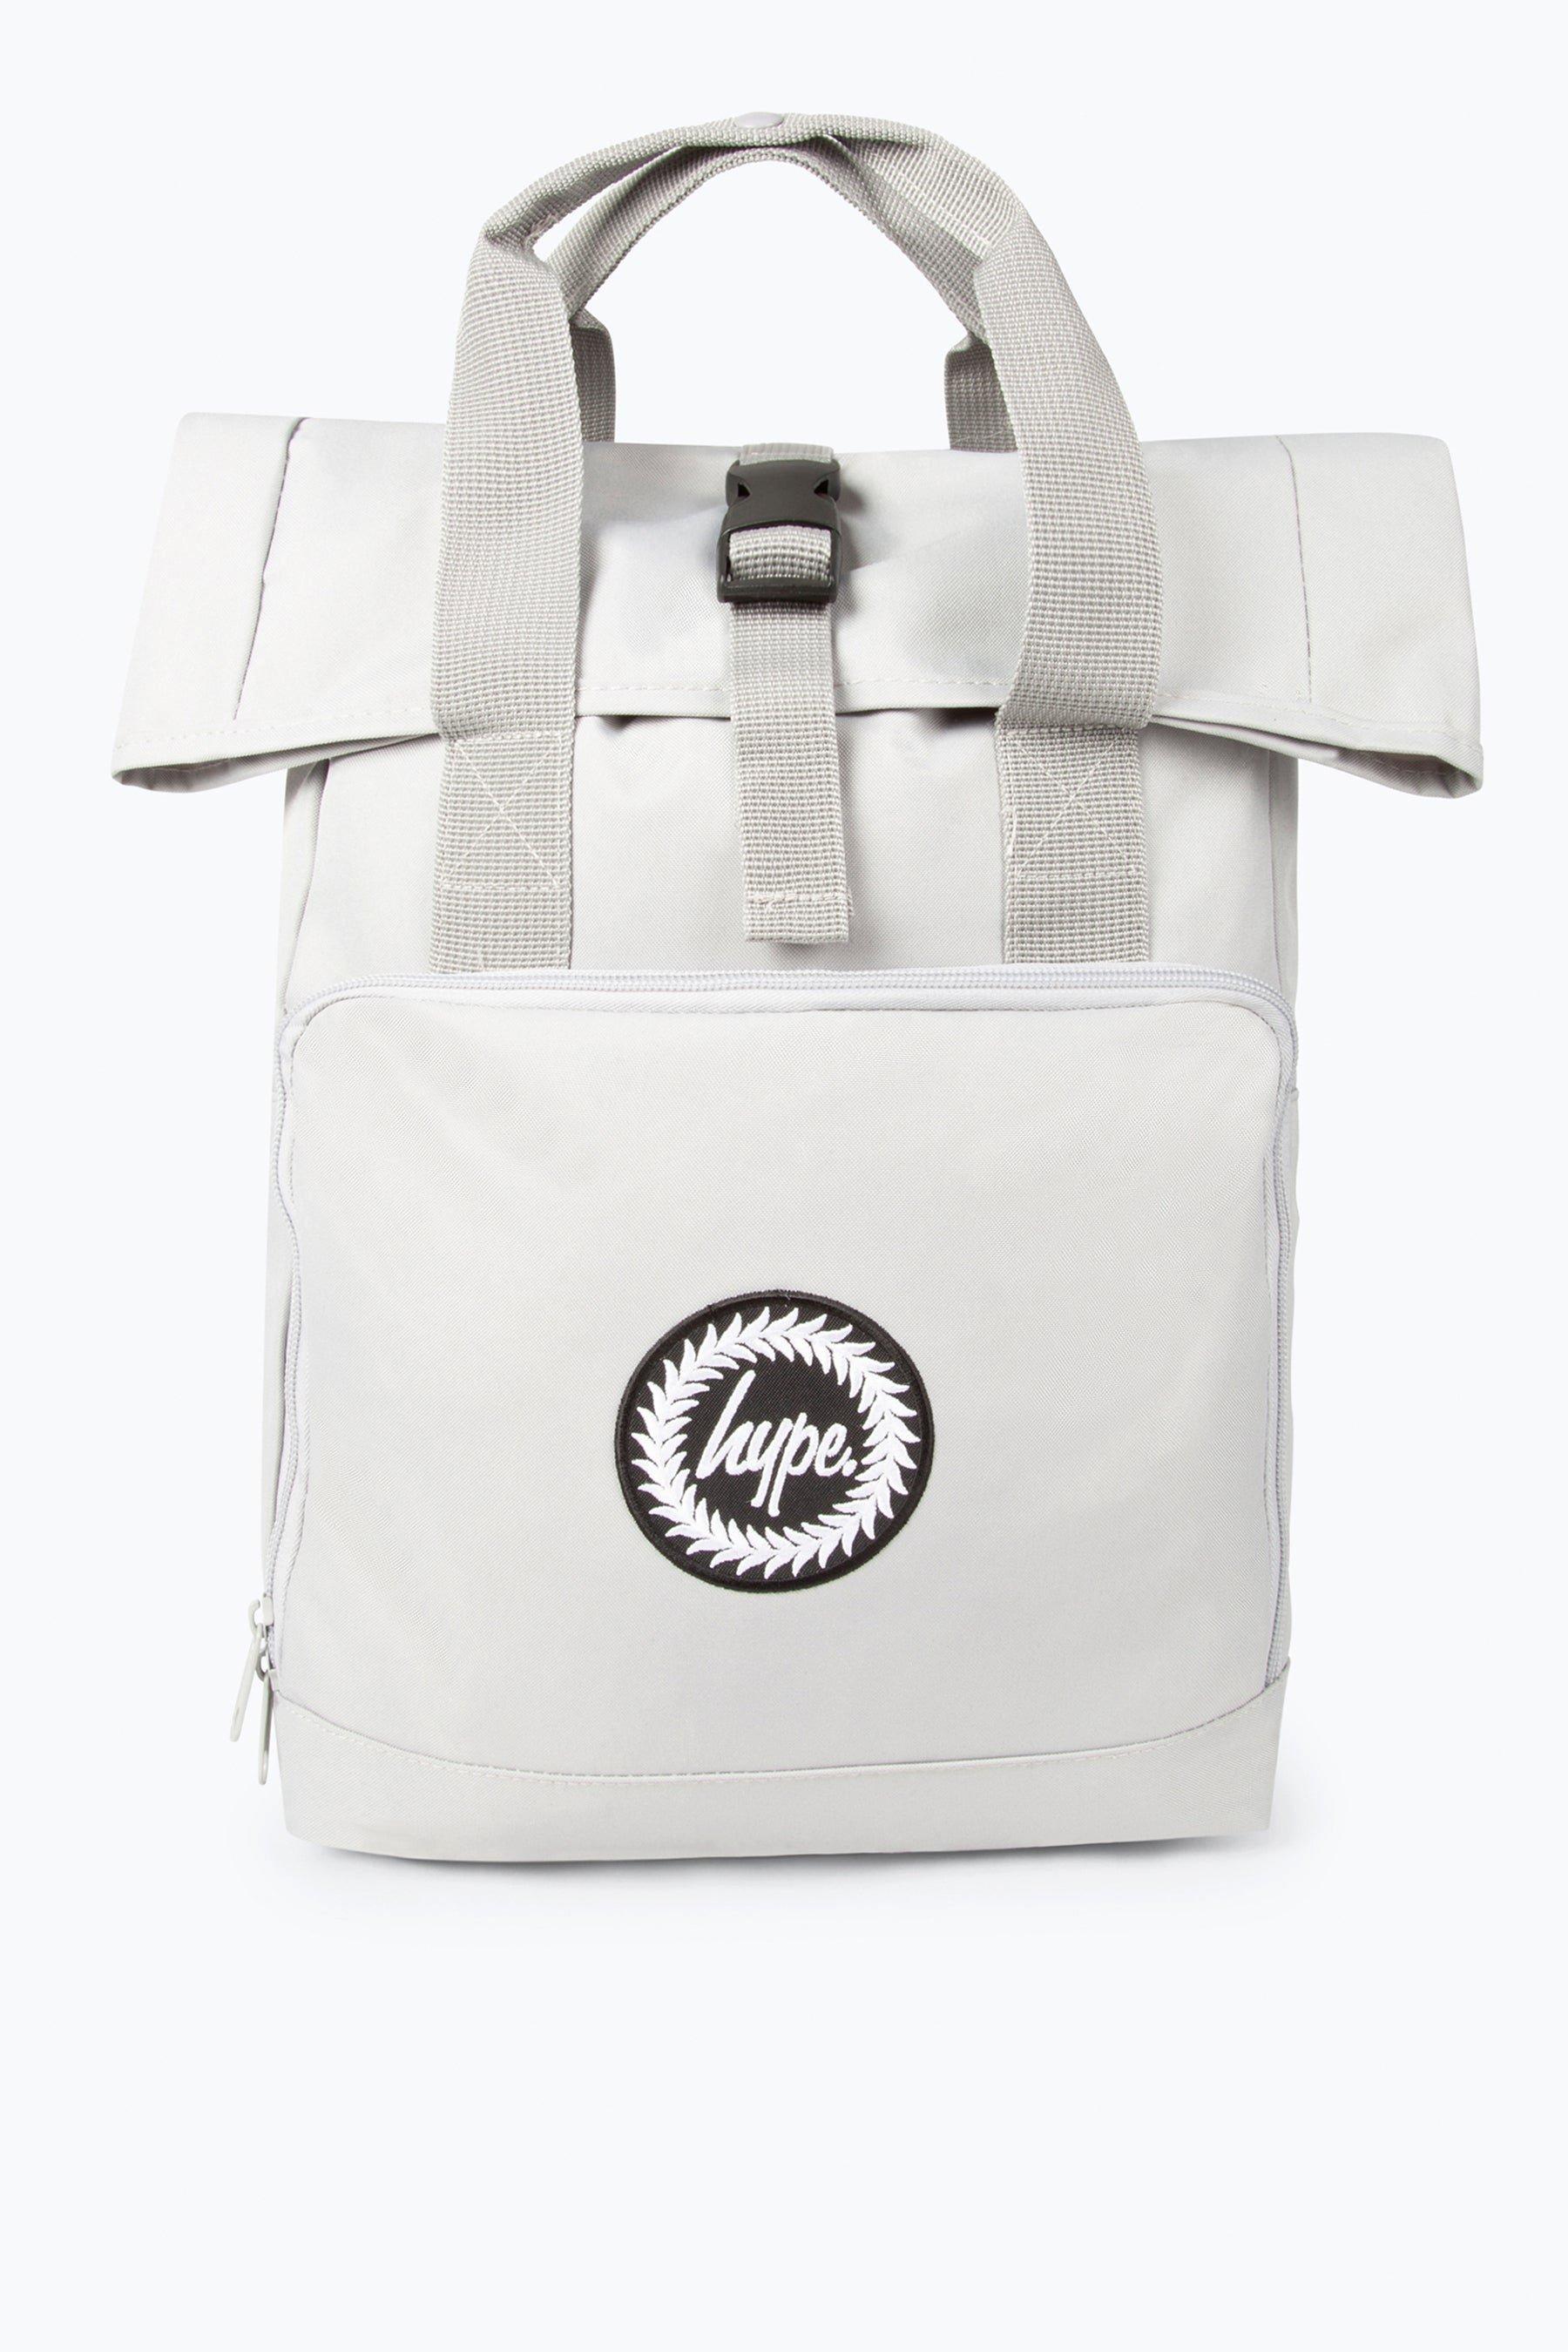 Рюкзак с двумя ручками и складной крышкой Hype, серый